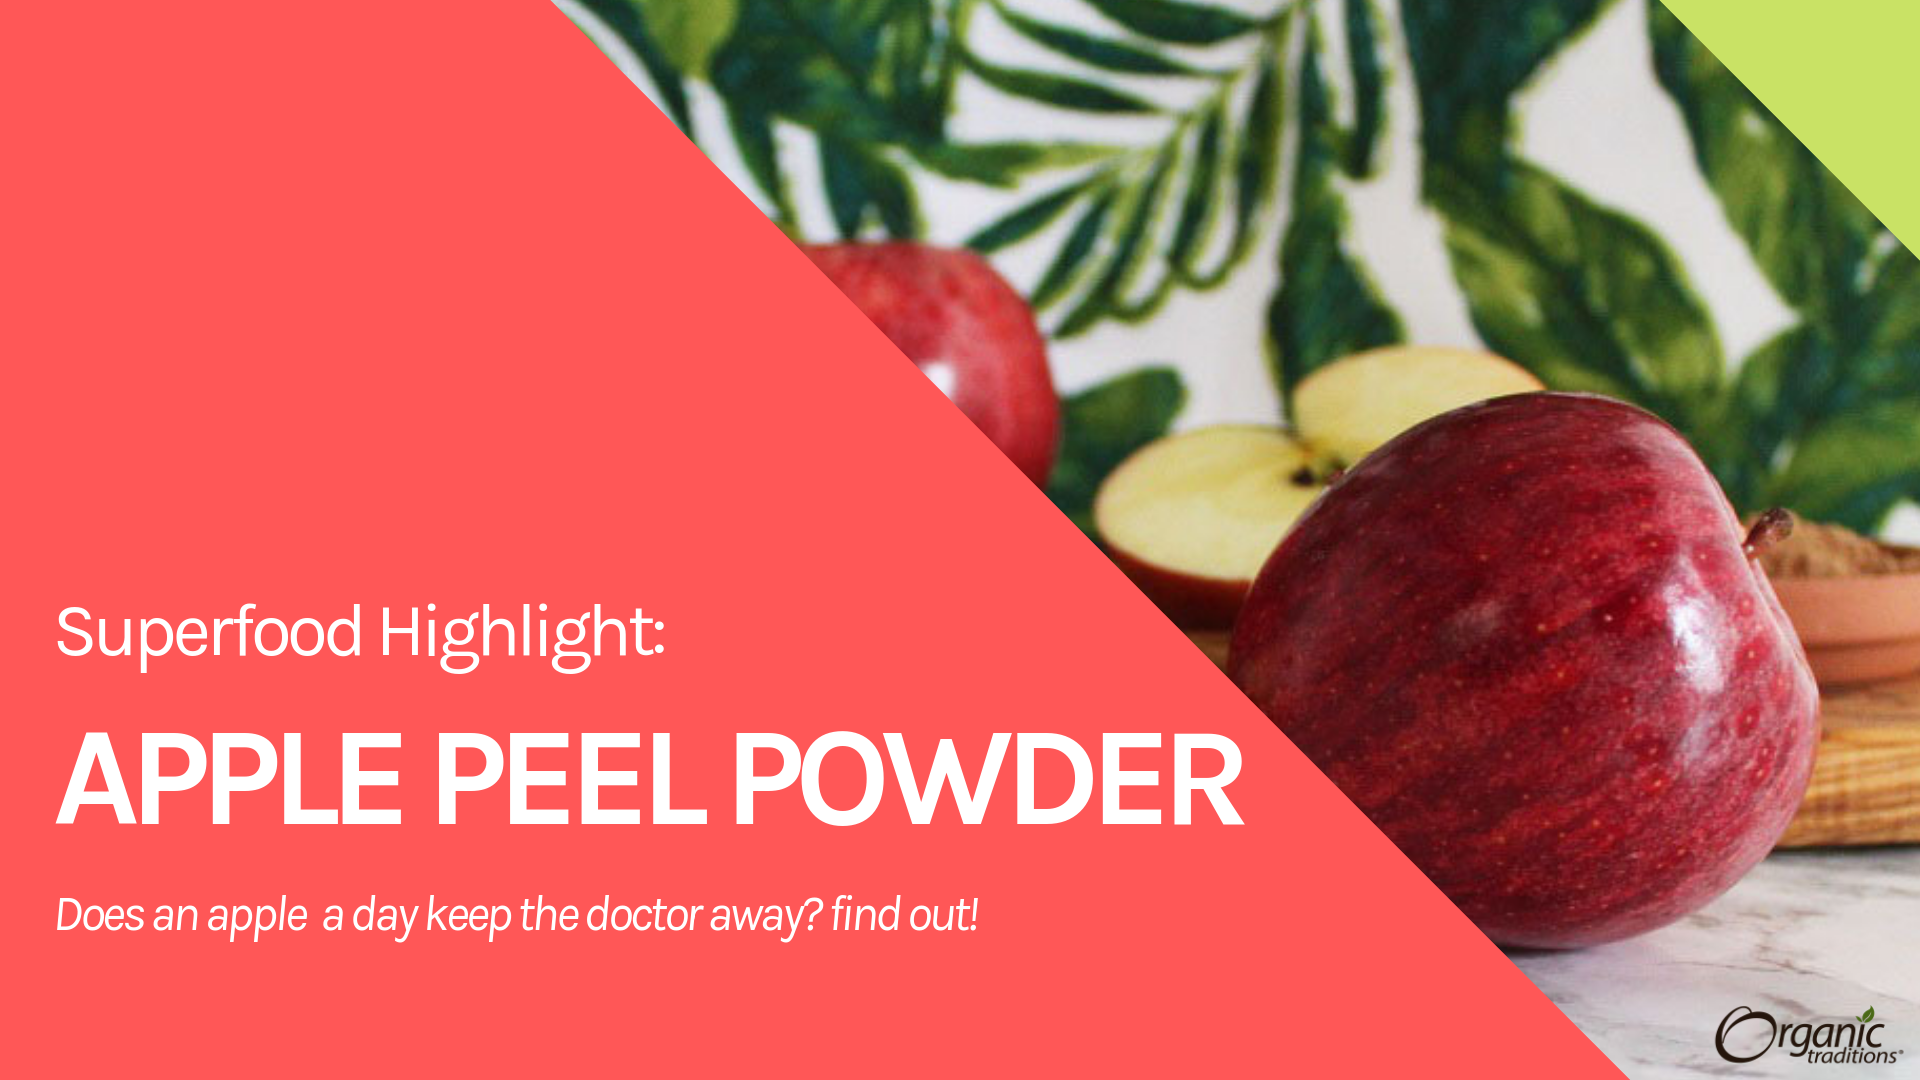 Superfood Highlight: Apple Peel Powder